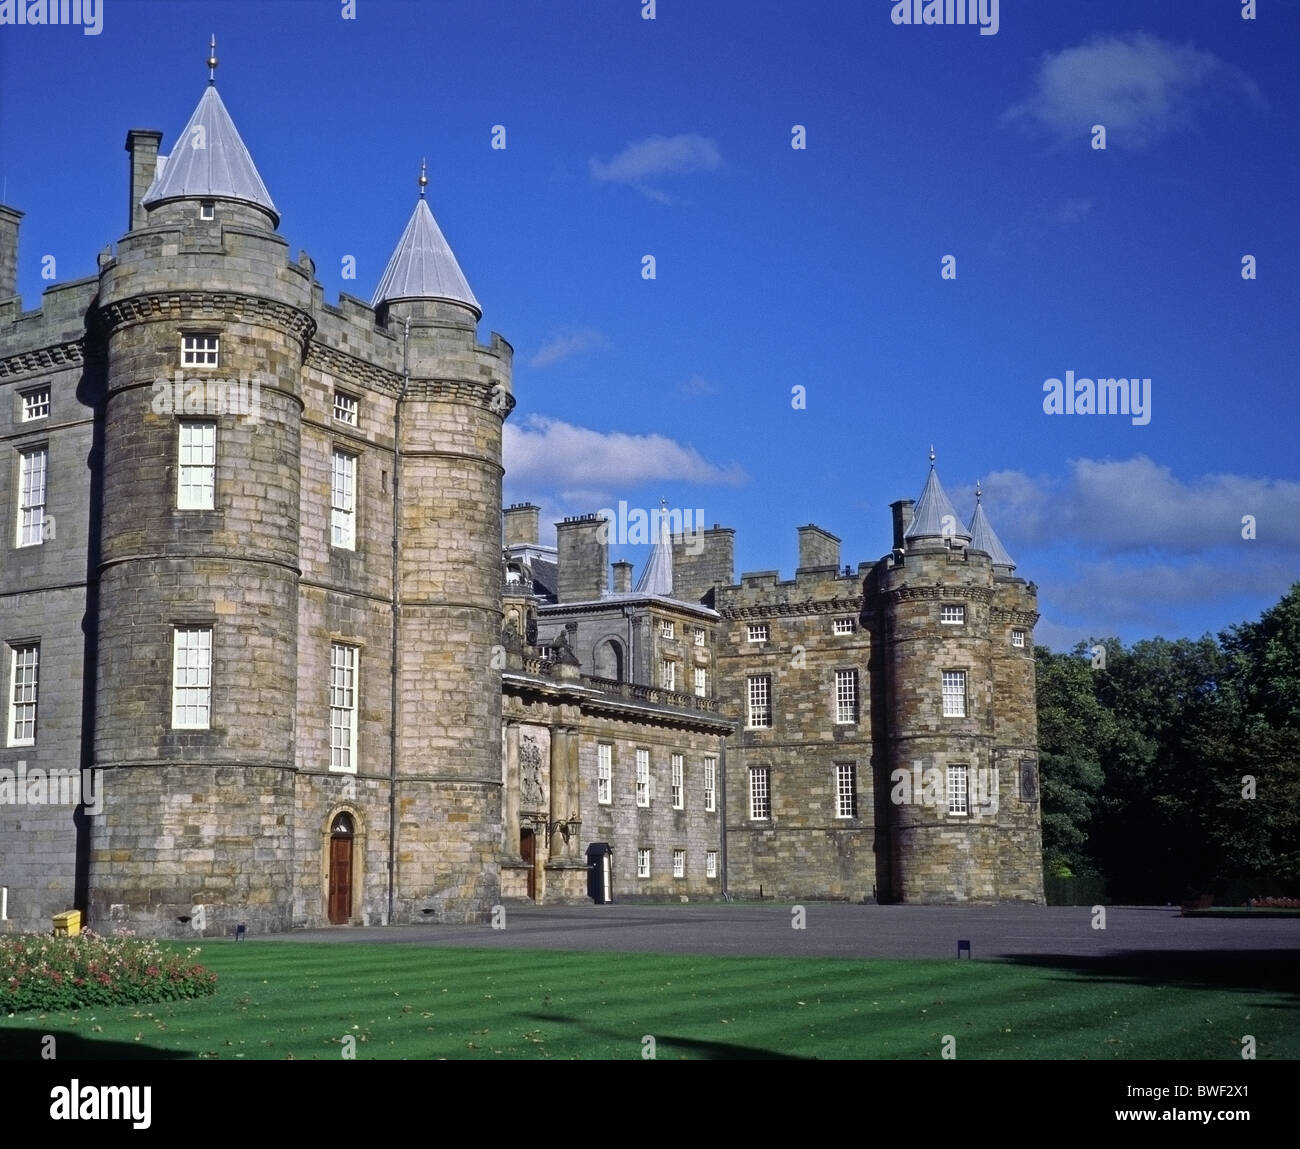 Palace of Holyrood, Edinburgh, Scotland Stock Photo